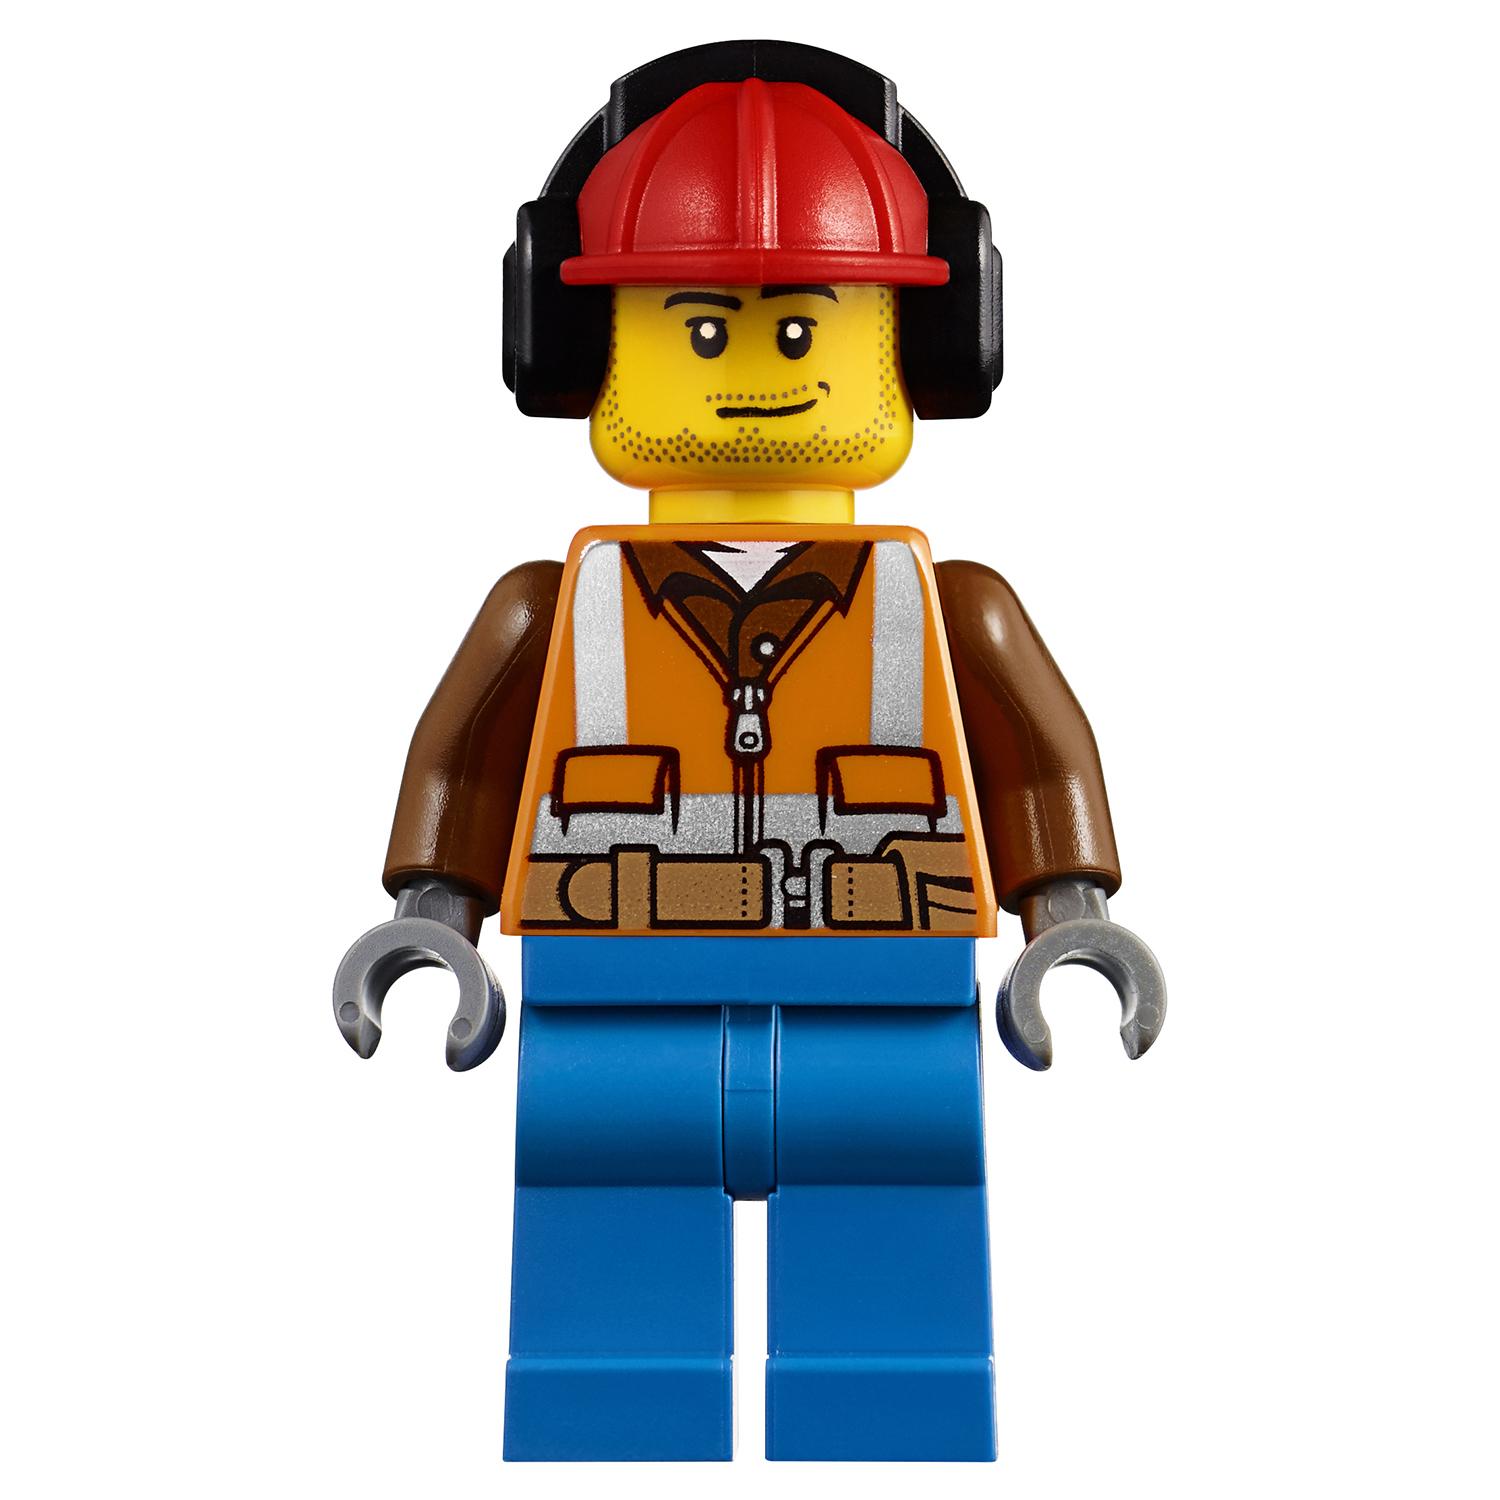 Lego City 60181 Лесной трактор